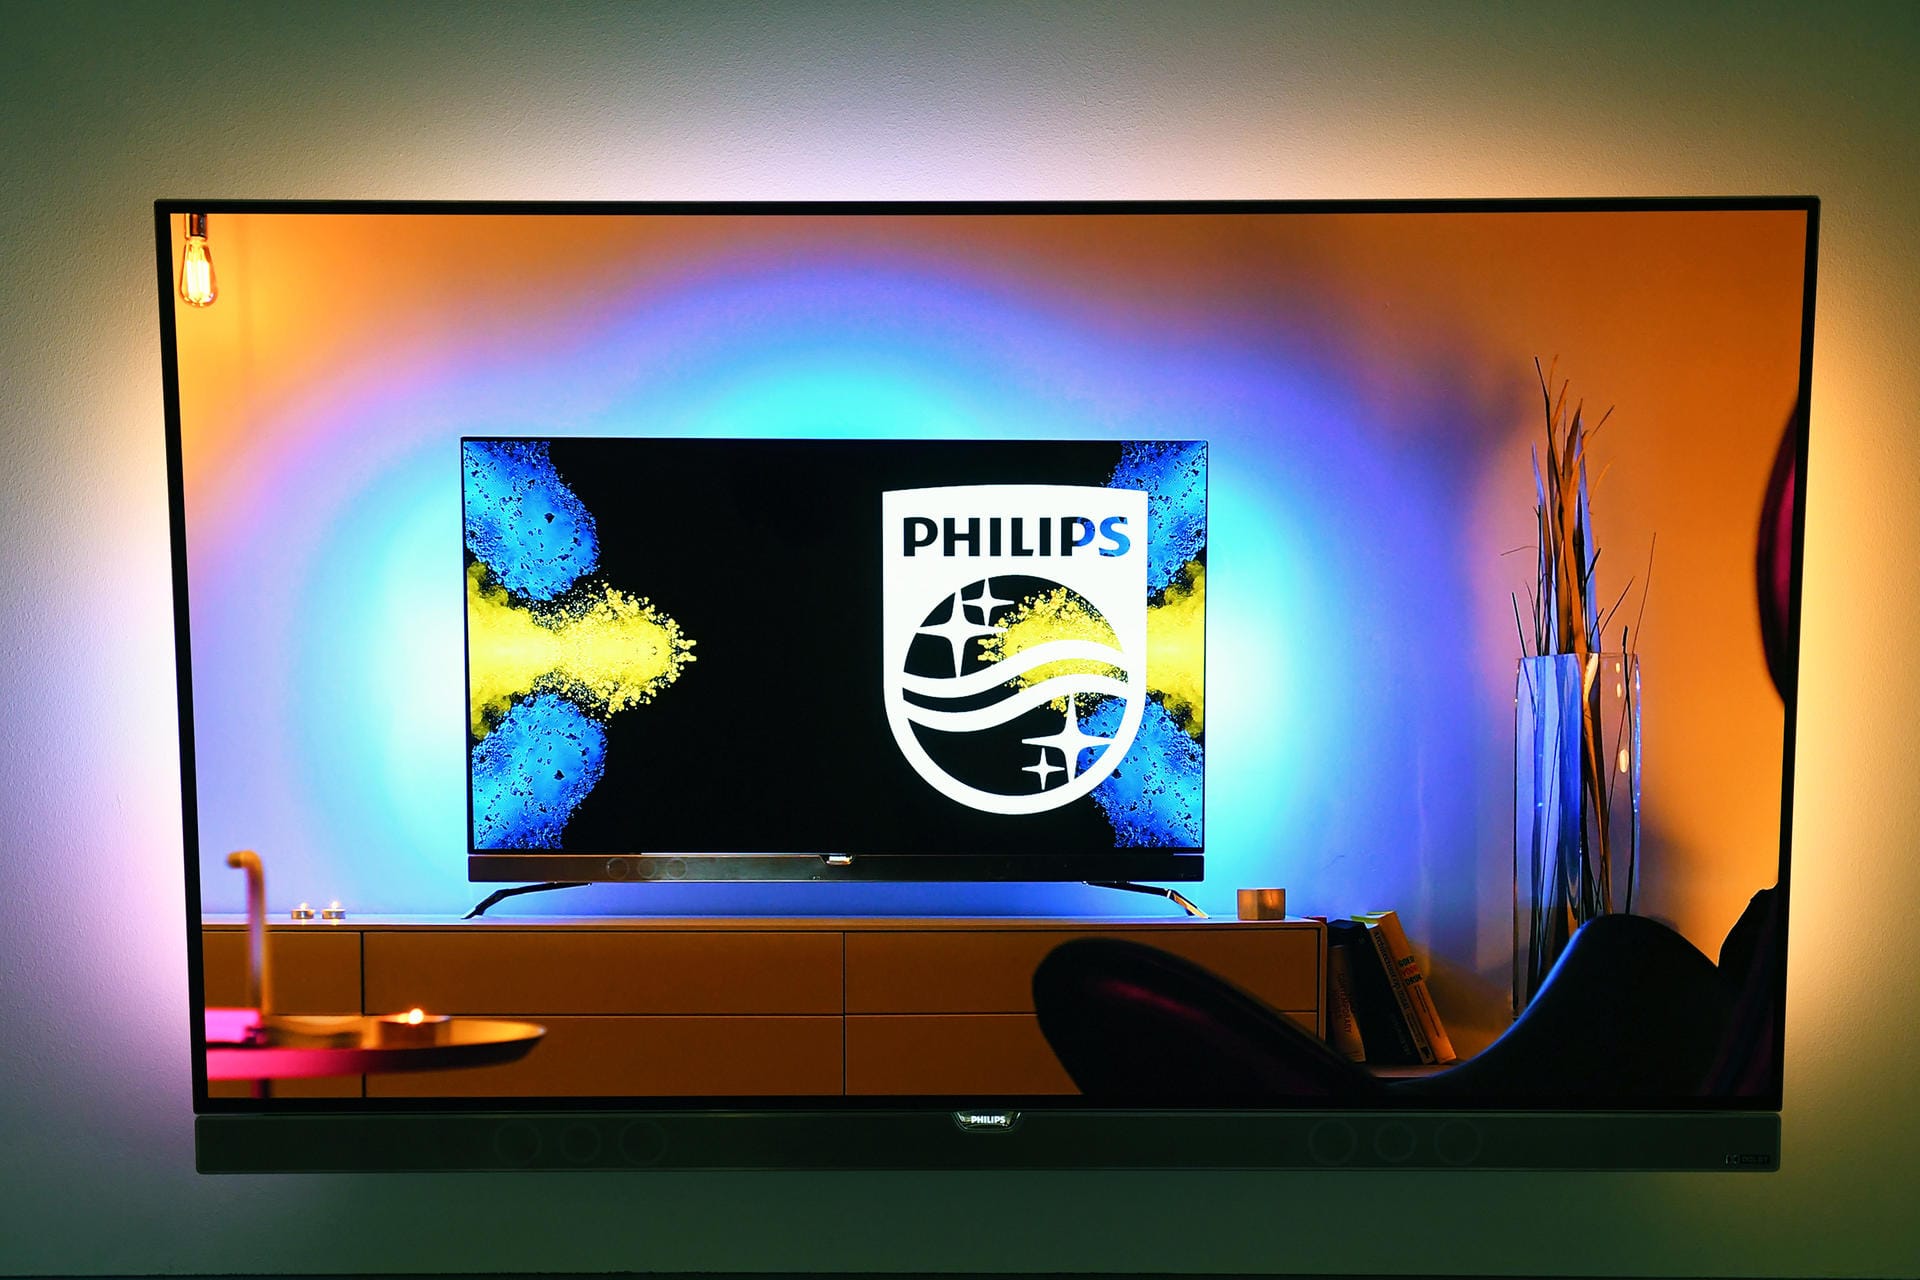 Auch Zusatzfunktionen sollen Käufer überzeugen. Philips beispielsweise bietet seit Jahren seine "Ambilight" genannte Hintergrundbeleuchtung an. Die Farben, die von LED-Leuchtleisten an die Wand hinter dem Fernseher gestrahlt werden, passen sich dynamisch an den Bildinhalt auf der Mattscheibe an.